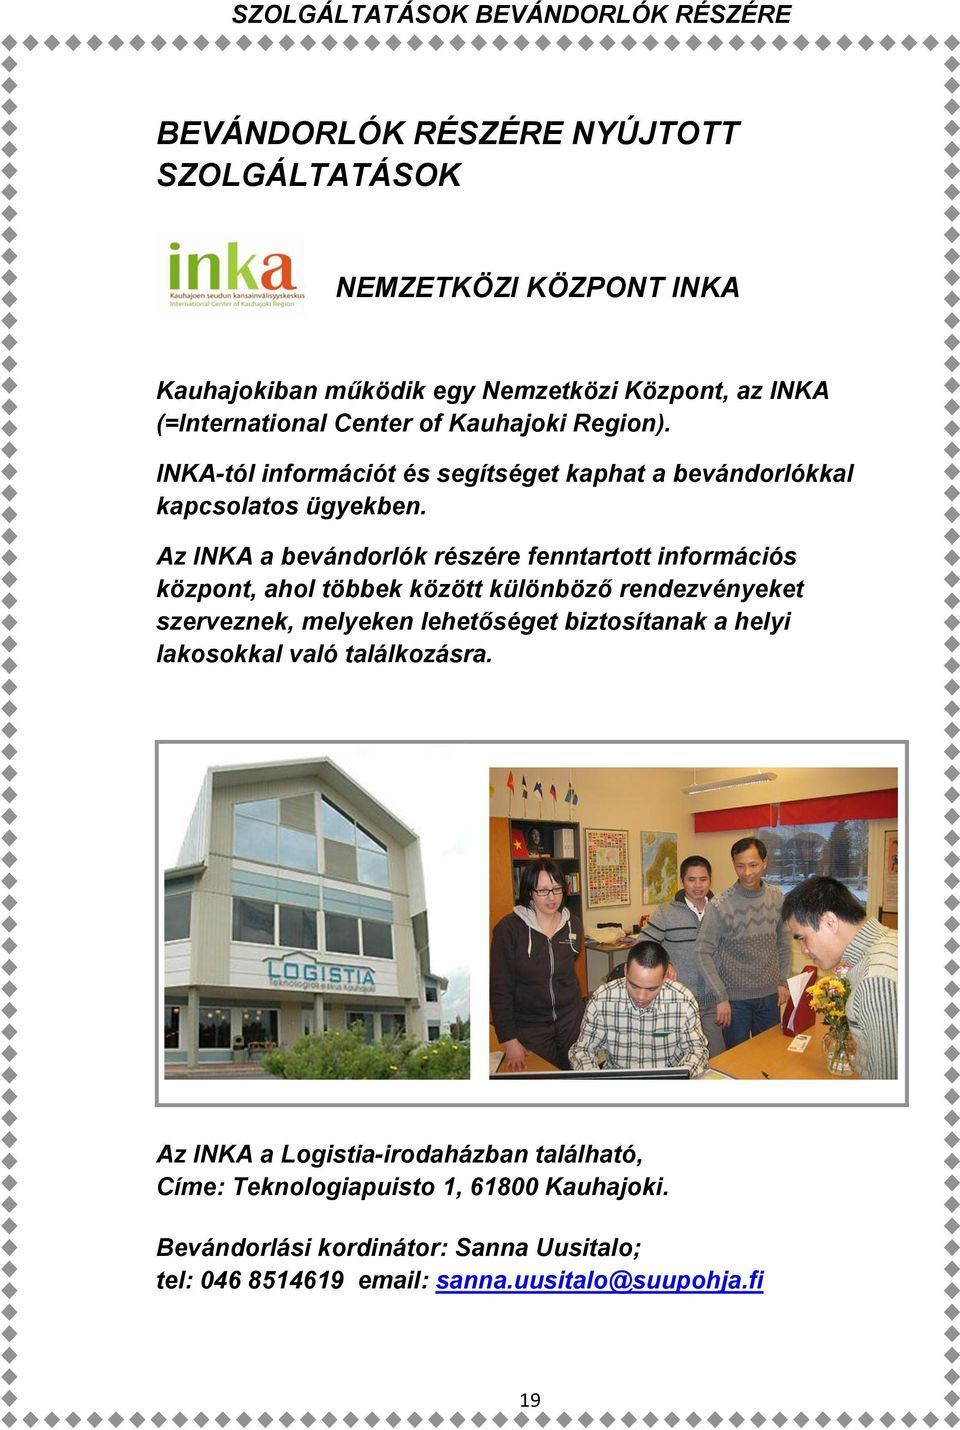 Az INKA a bevándorlók részére fenntartott információs központ, ahol többek között különböző rendezvényeket szerveznek, melyeken lehetőséget biztosítanak a helyi